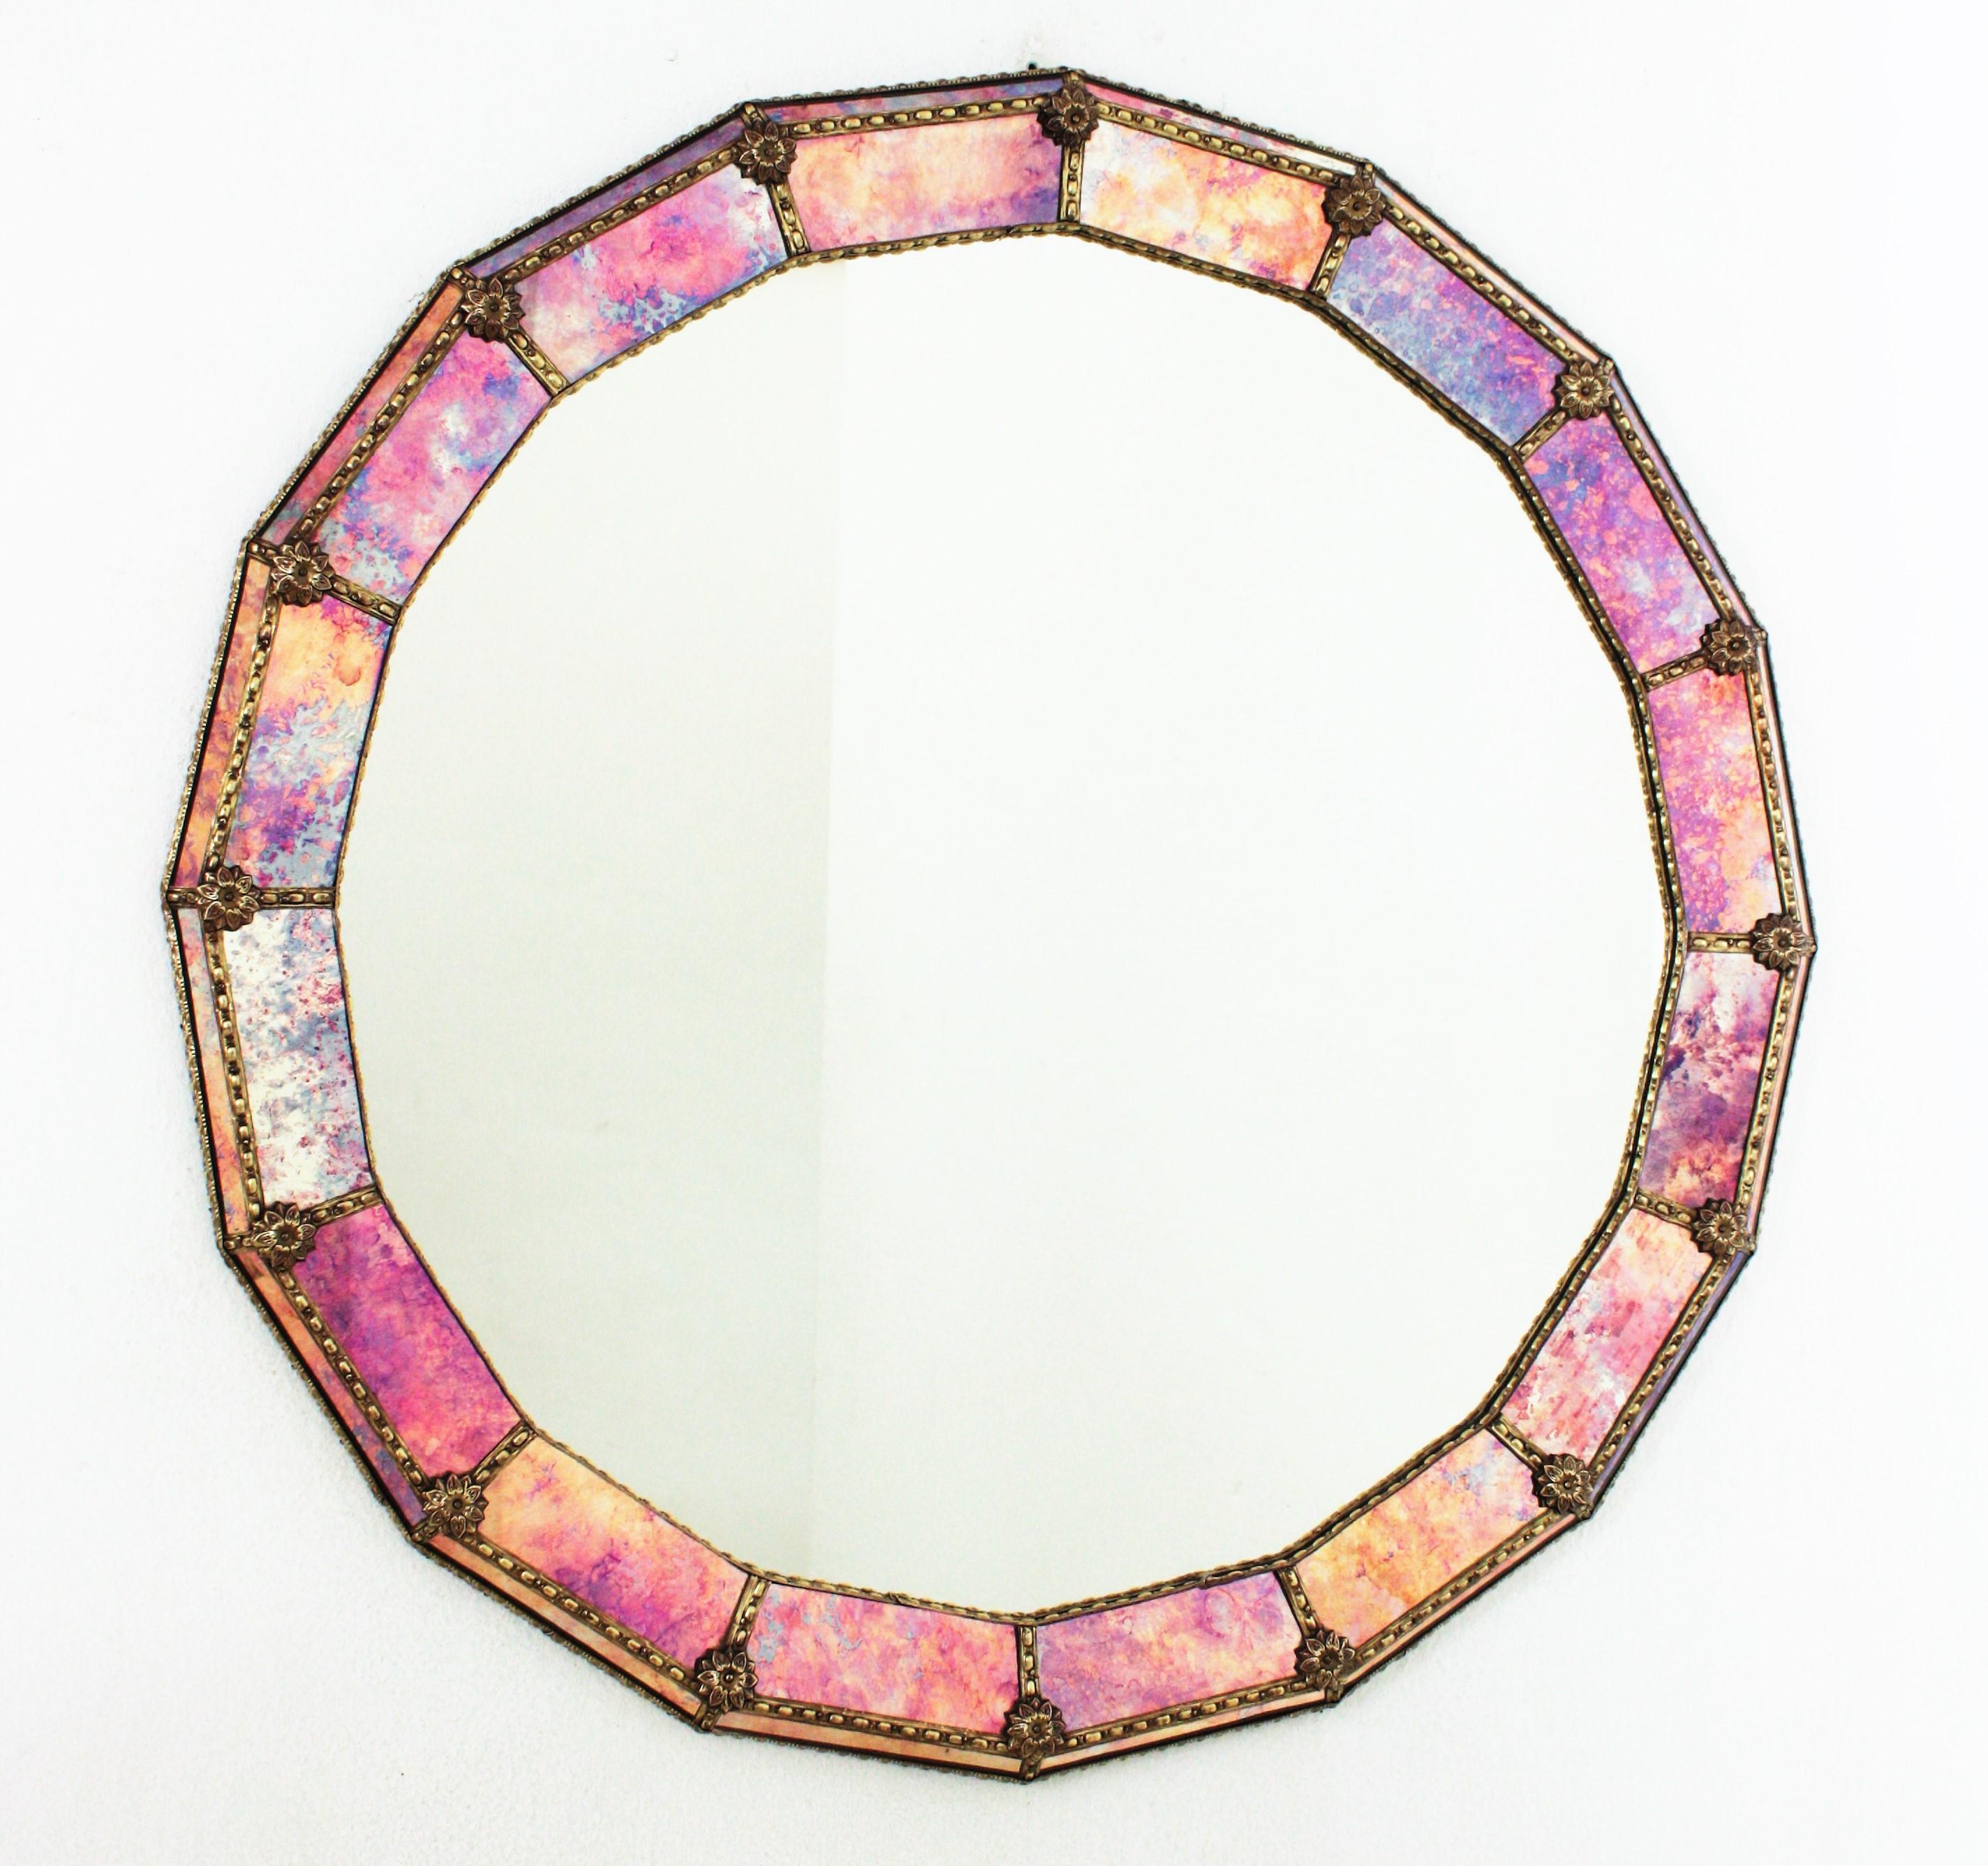 Grand miroir vénitien polyédrique rond de style midcentury coloré
Superbe miroir rond de style vénitien Hollywood Regency avec des panneaux de verre irisé rose, violet et ambre. Espagne, années 1950
Ce miroir glamour est doté d'un cadre à double